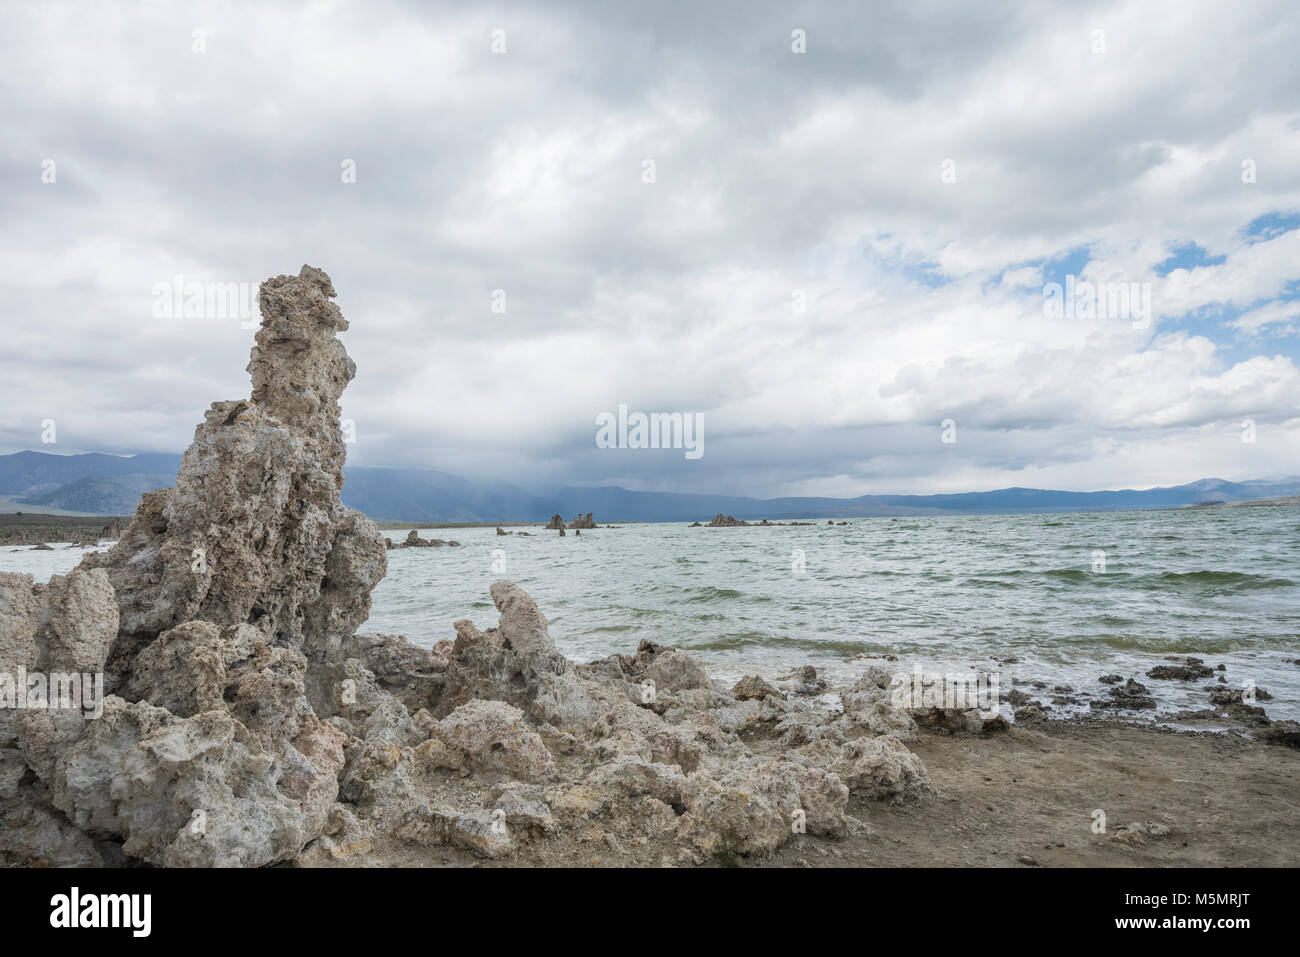 Avec les nuages de tempête de sable, brassage tufas debout sur le lac Mono, marquant l'eau salée au cours des millénaires de récession à Lee Vining, Californie Banque D'Images